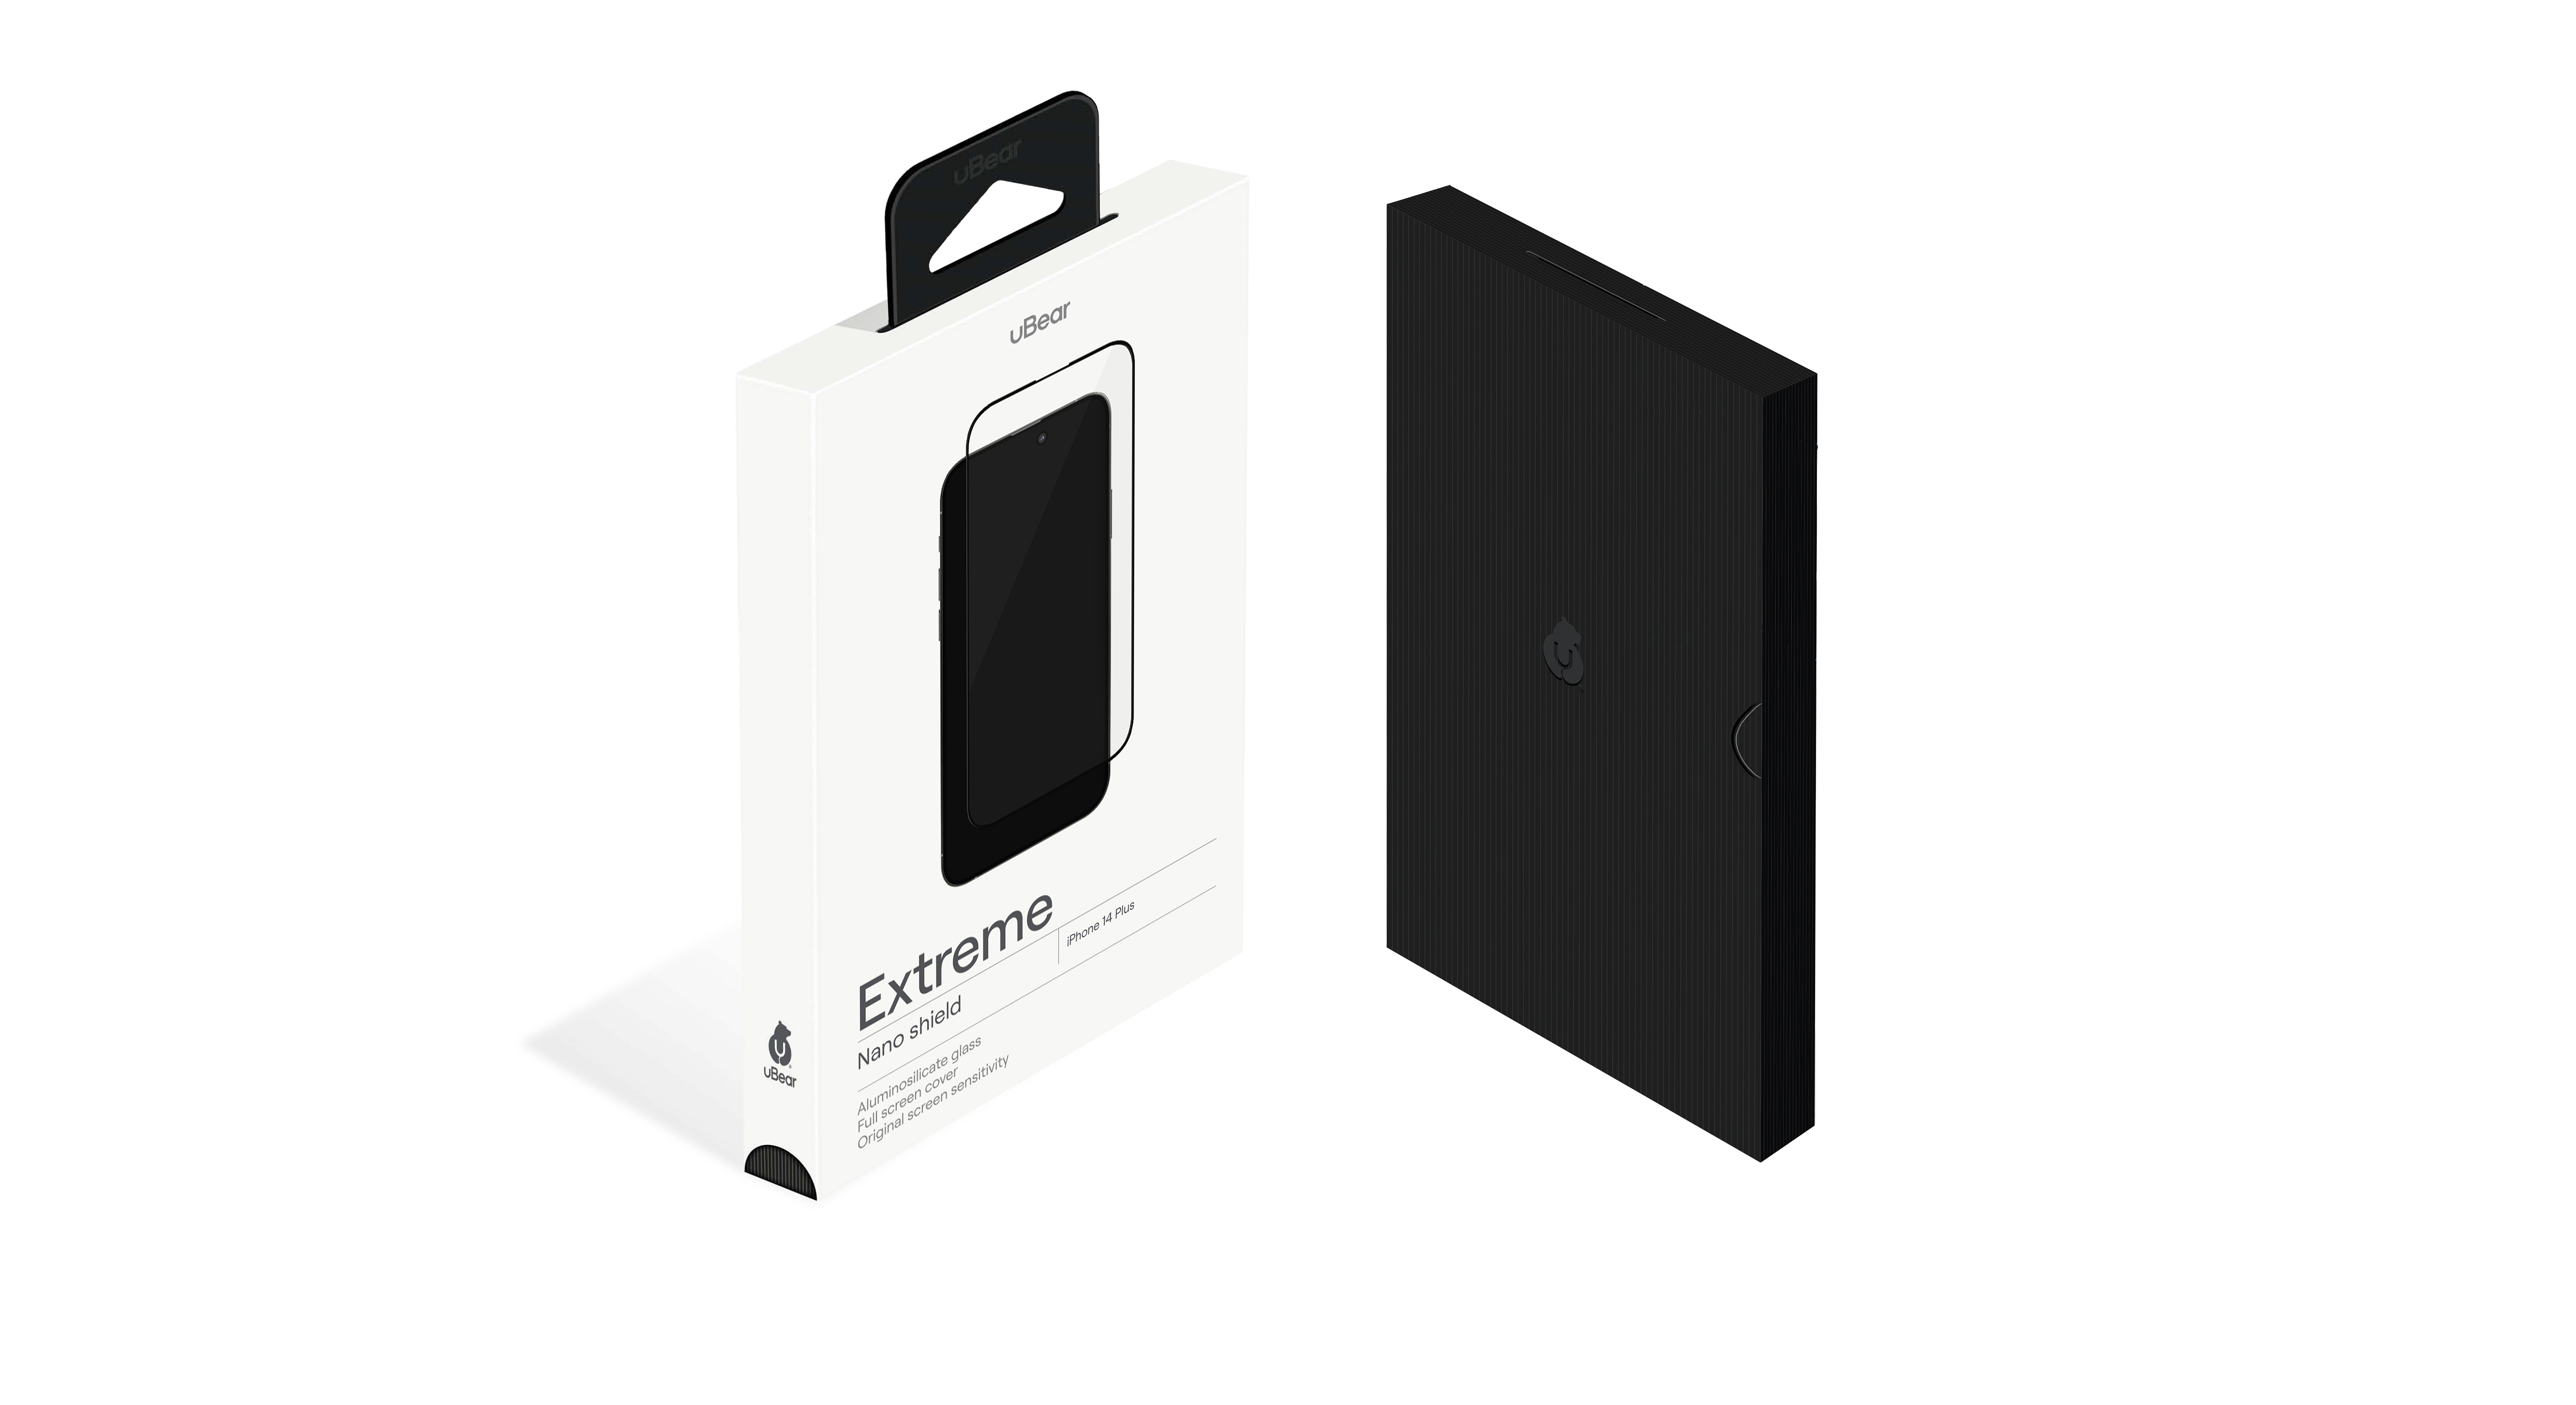 Стекло защитное  uBear Extreme Nano Shield для  iPhone 14 Pro, алюмосиликатное, чёрный